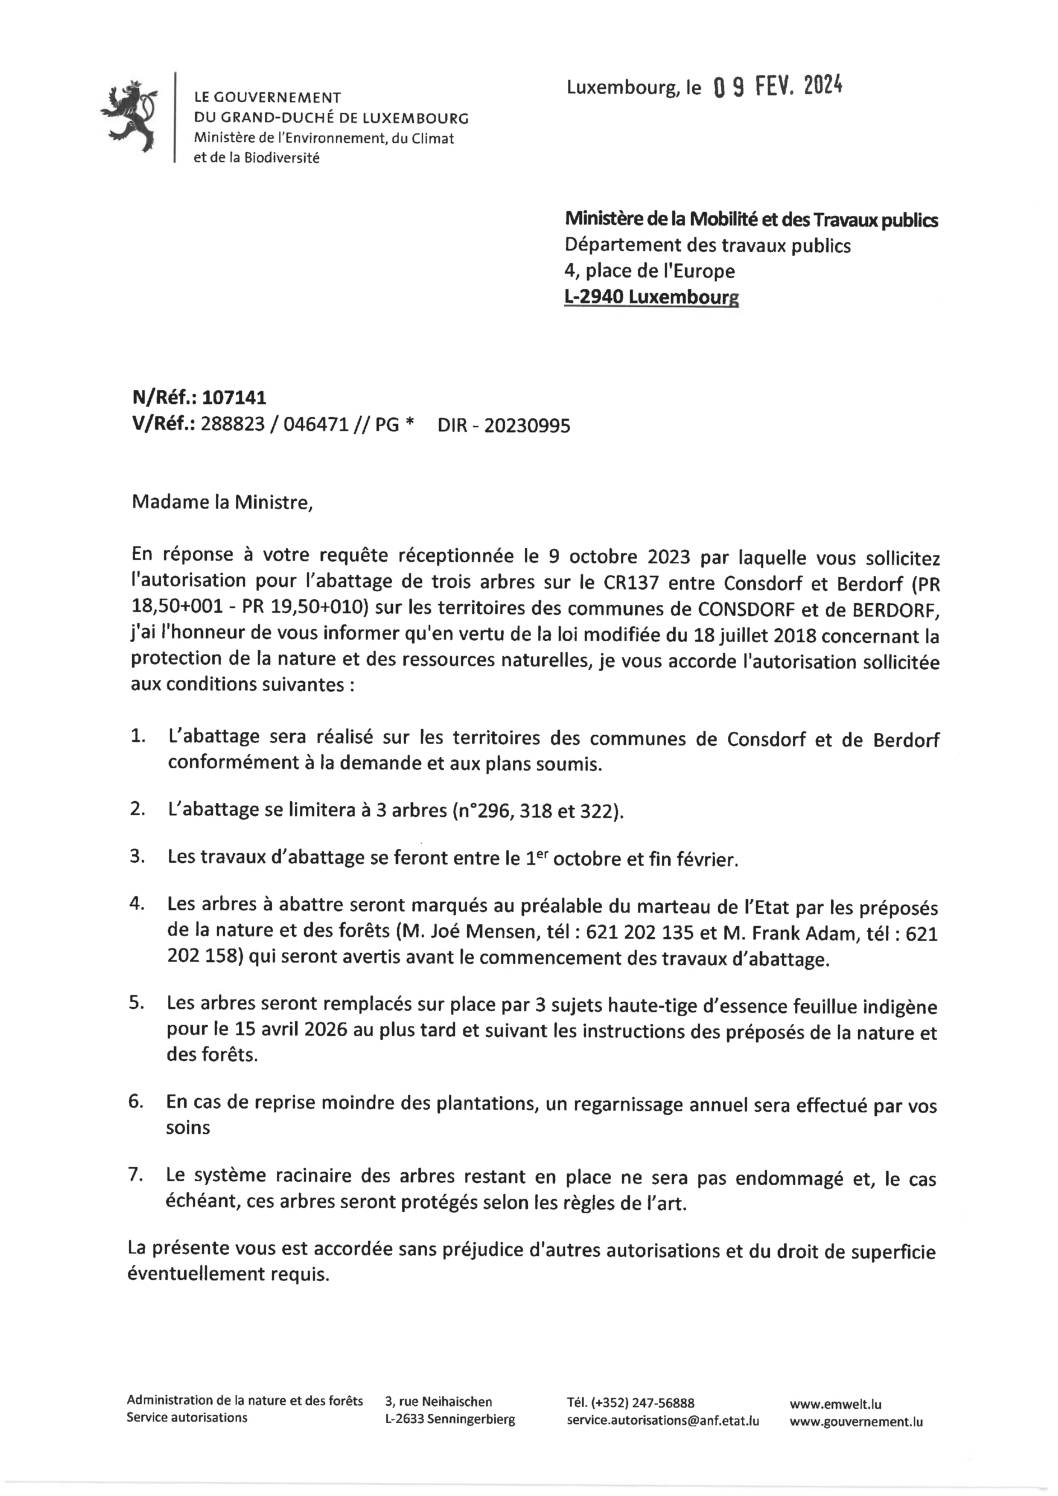 Notification de décision pour le dossier 107141 : Abattage de trois arbres sur le CR137 entre Consdorf et Berdorf (PR 18,50+001 - PR 19,50+010